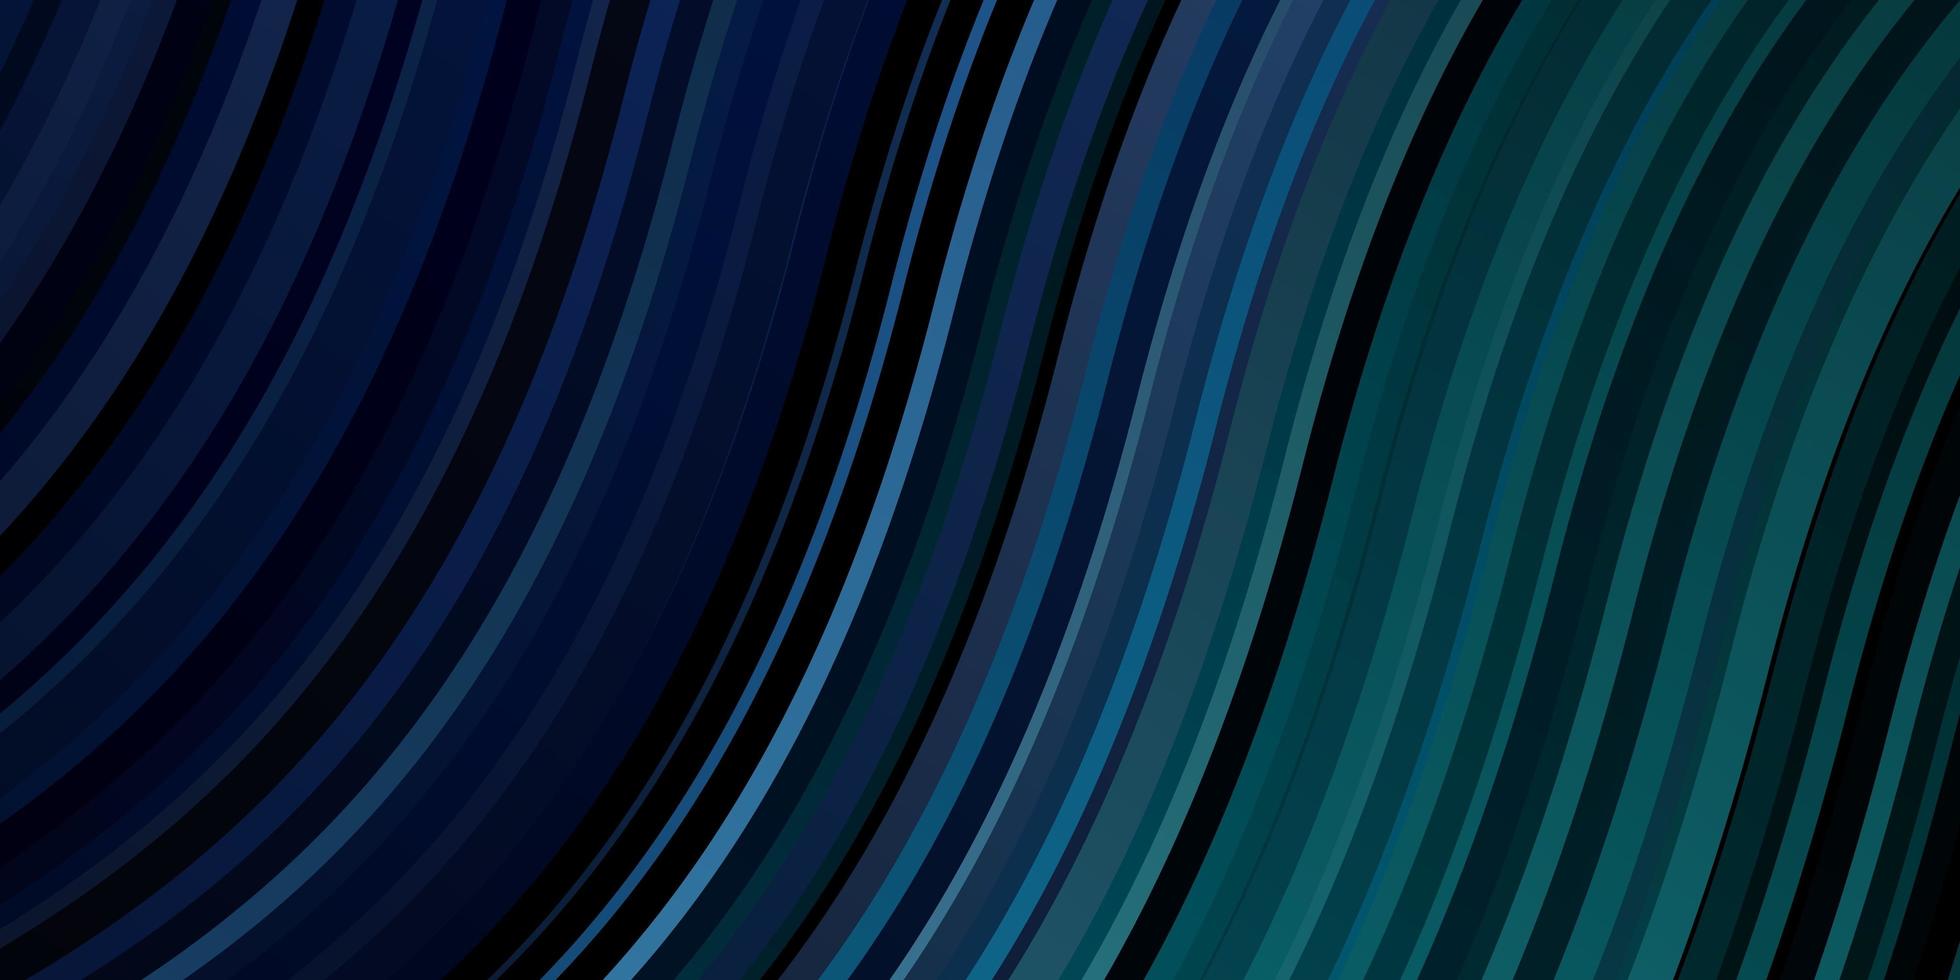 mörkblå, grön vektorlayout med sneda linjer. vektor